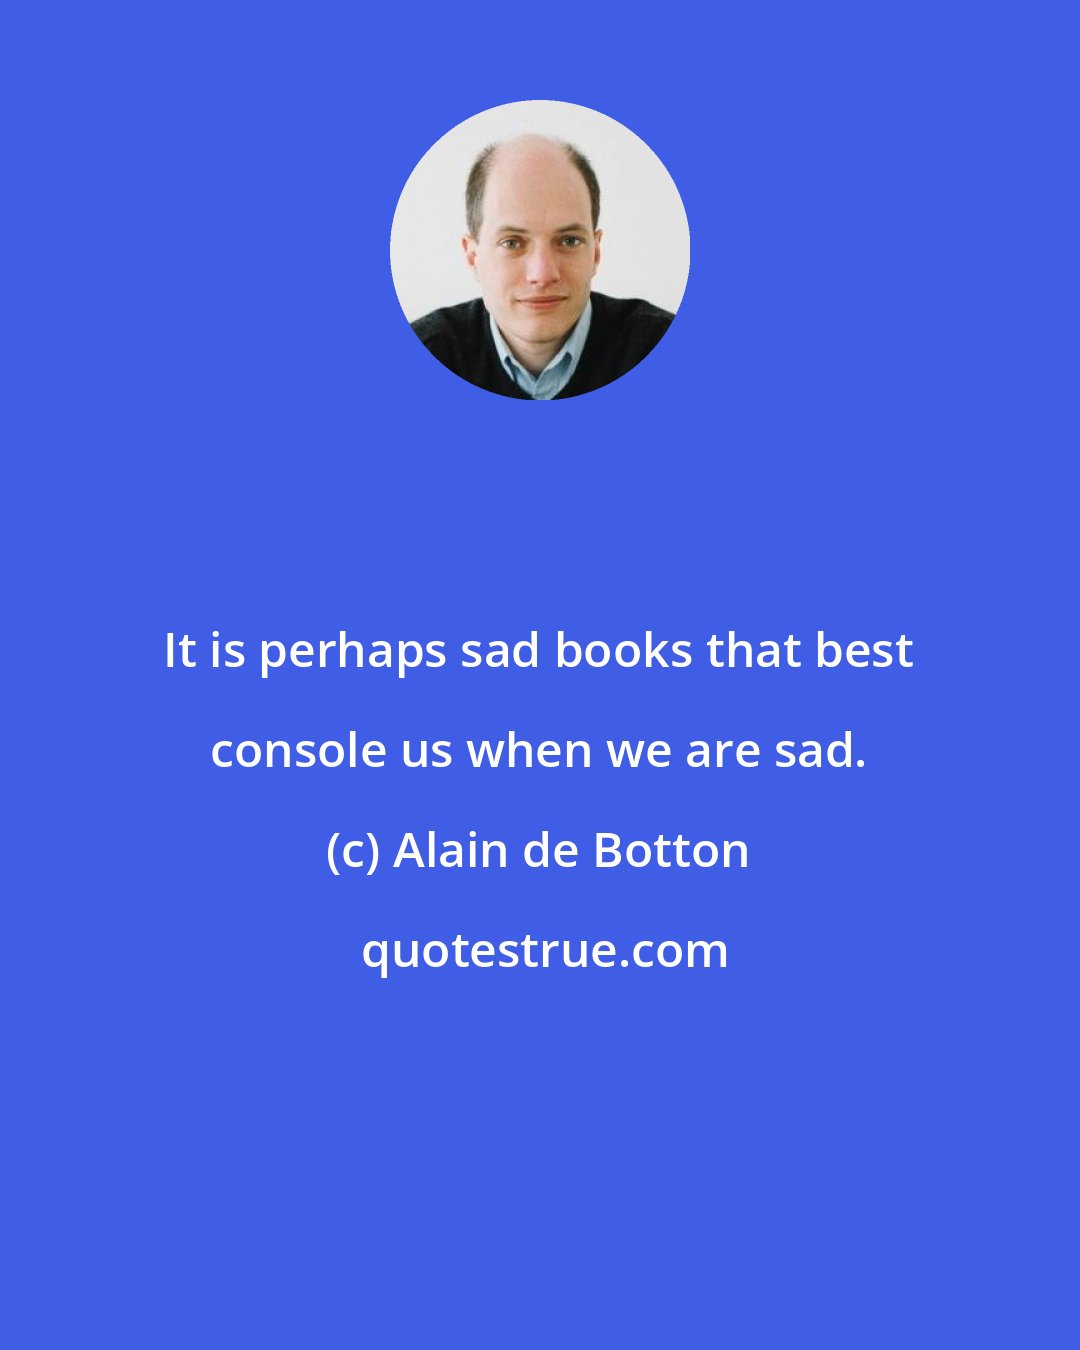 Alain de Botton: It is perhaps sad books that best console us when we are sad.